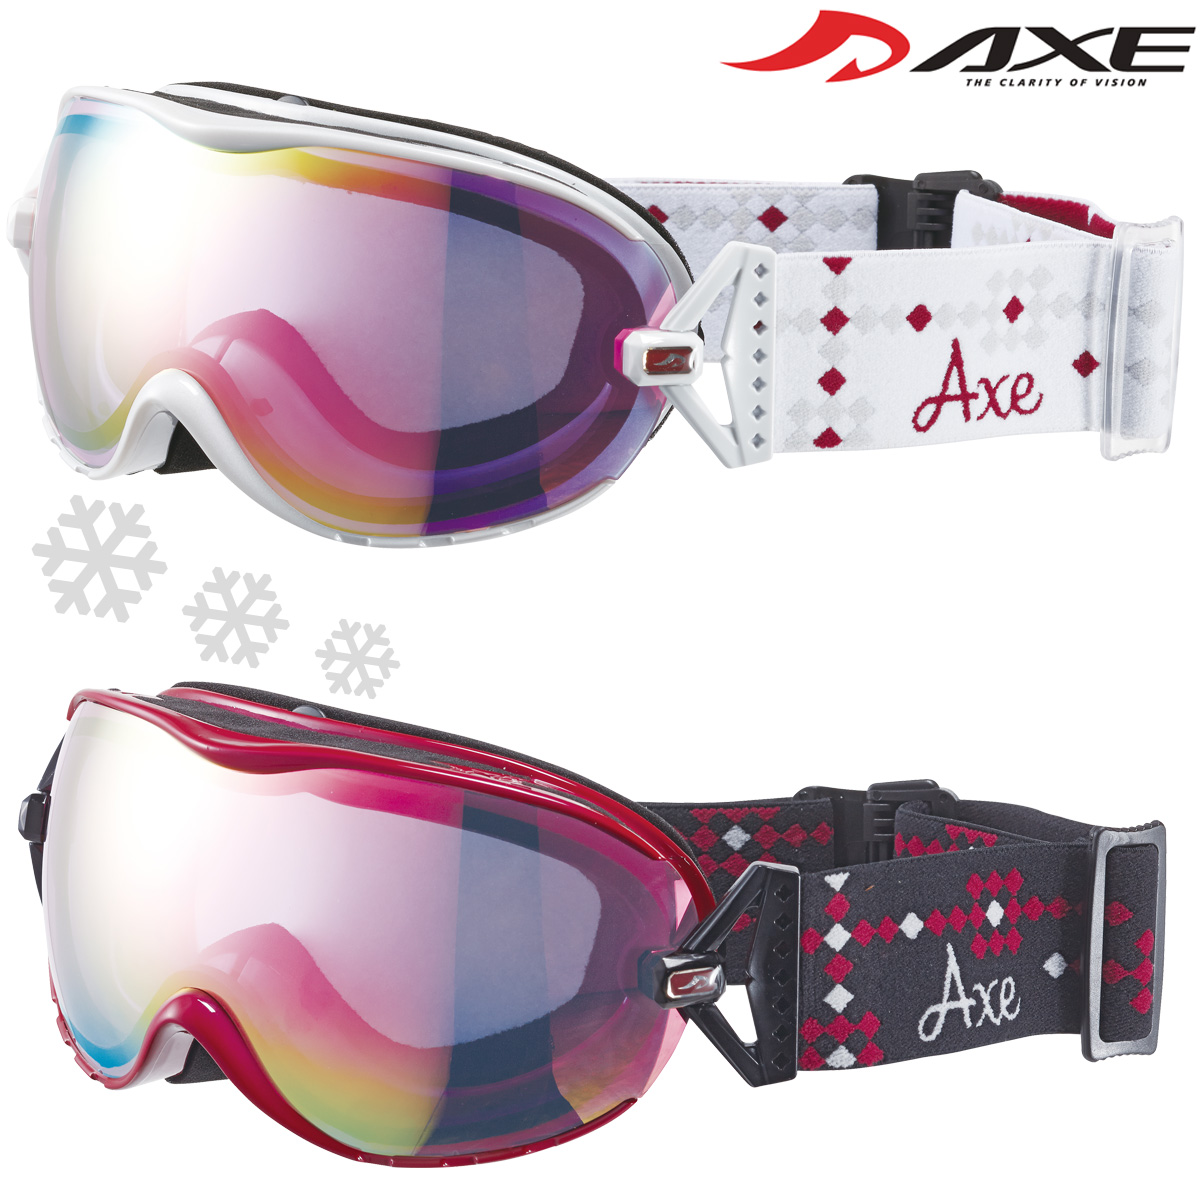 ゴーグル レディース 女性用 スノーボード スキー 曇り止め [19-20カタログモデル] AX650-WCM ダブルレンズ スノーゴーグル ヘルメット対応 AXE アックス